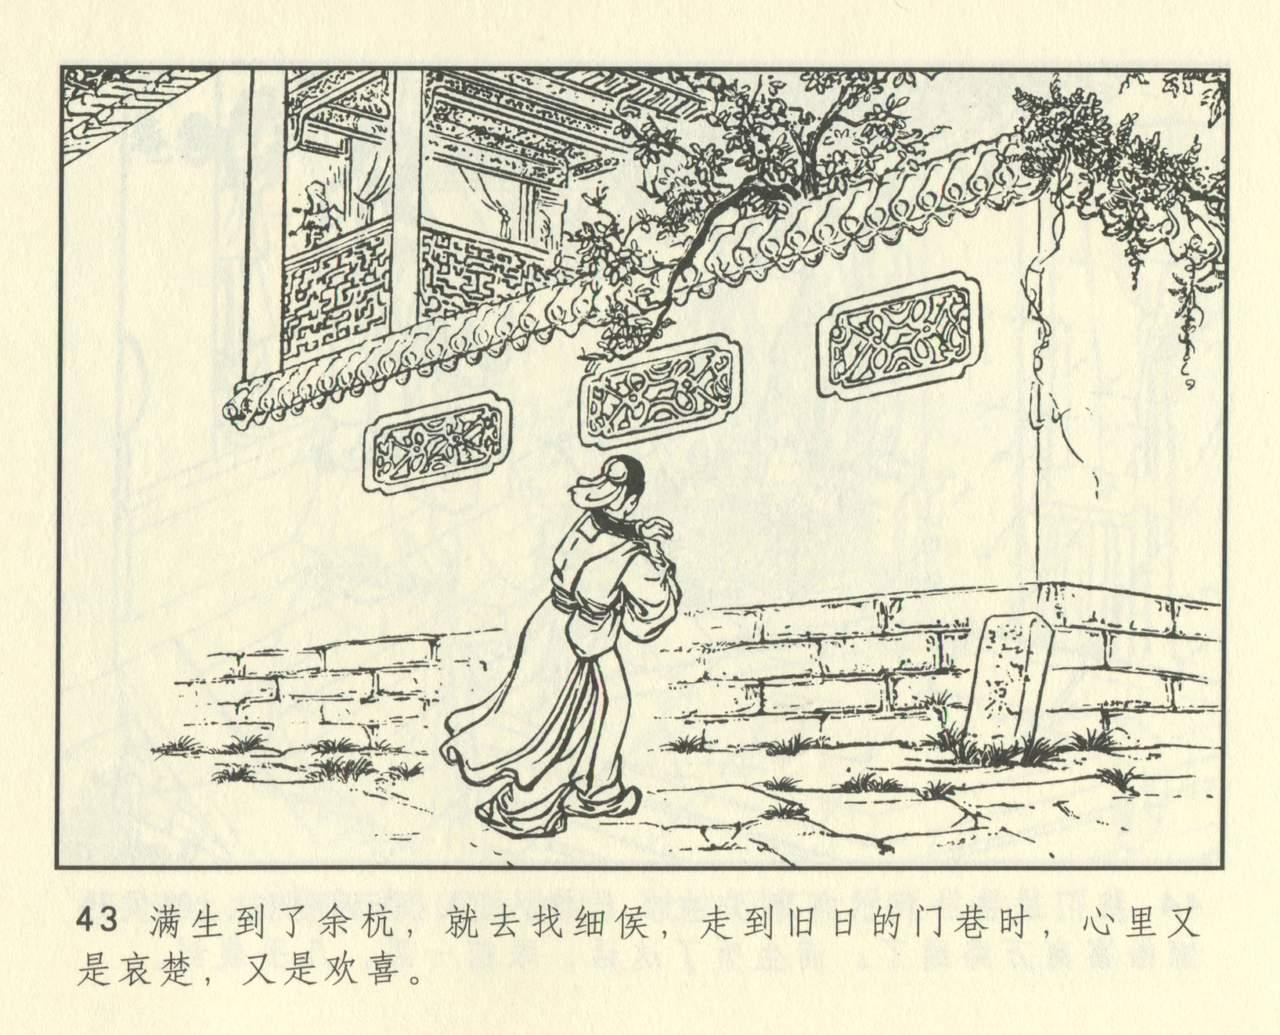 聊斋志异 张玮等绘 天津人民美术出版社 卷二十一 ~ 三十 454